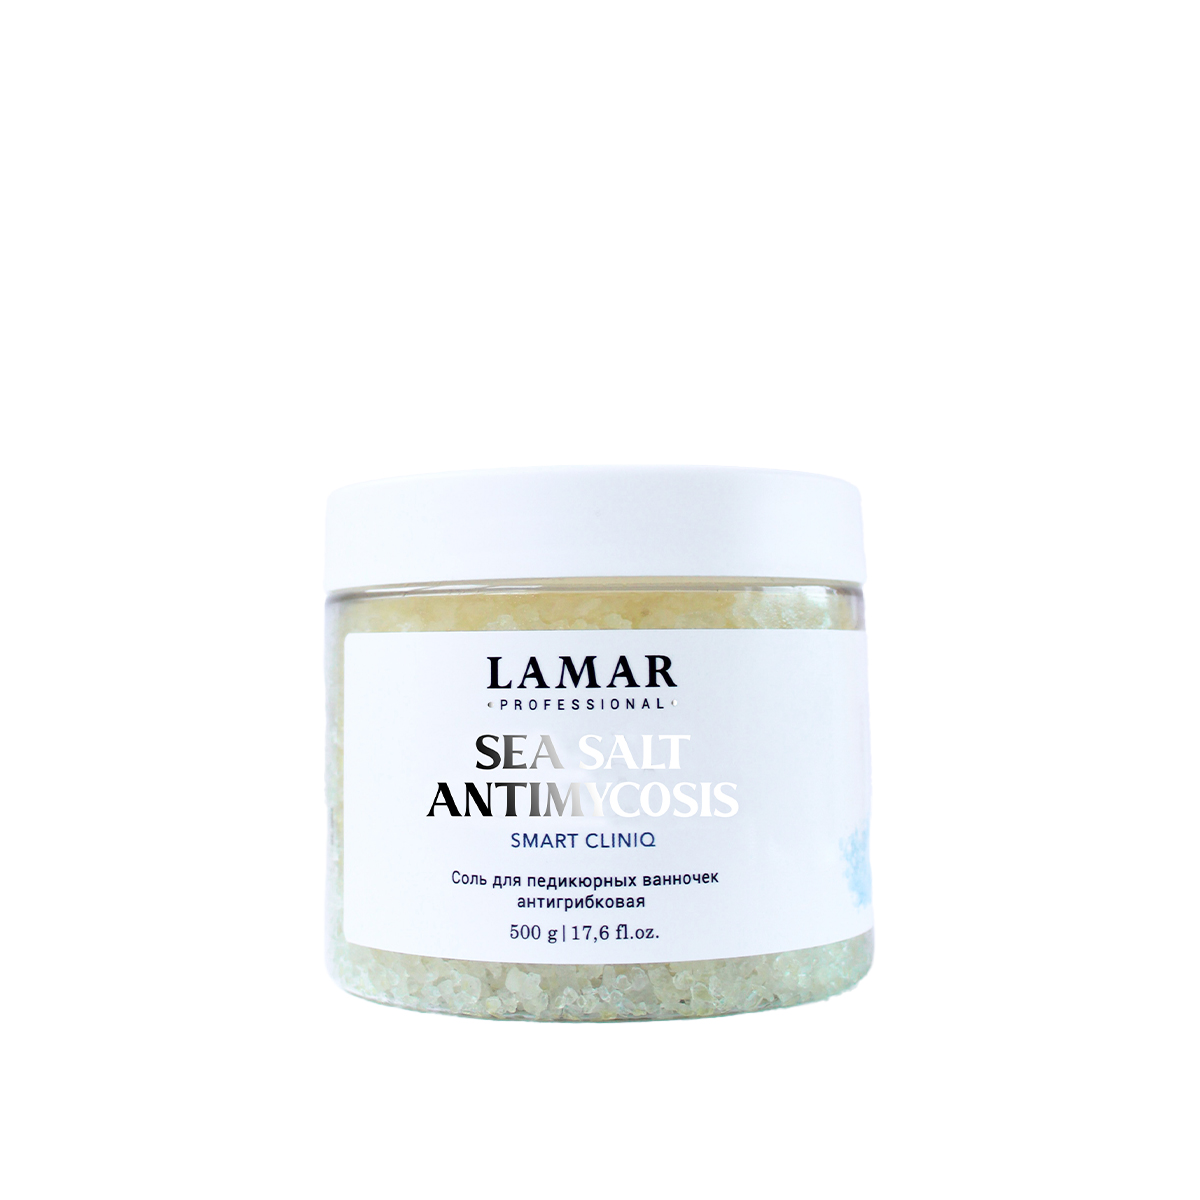 Соль для педикюрных ванночек Lamar Professional антигрибковая Sea salt Antimycosis 500 г